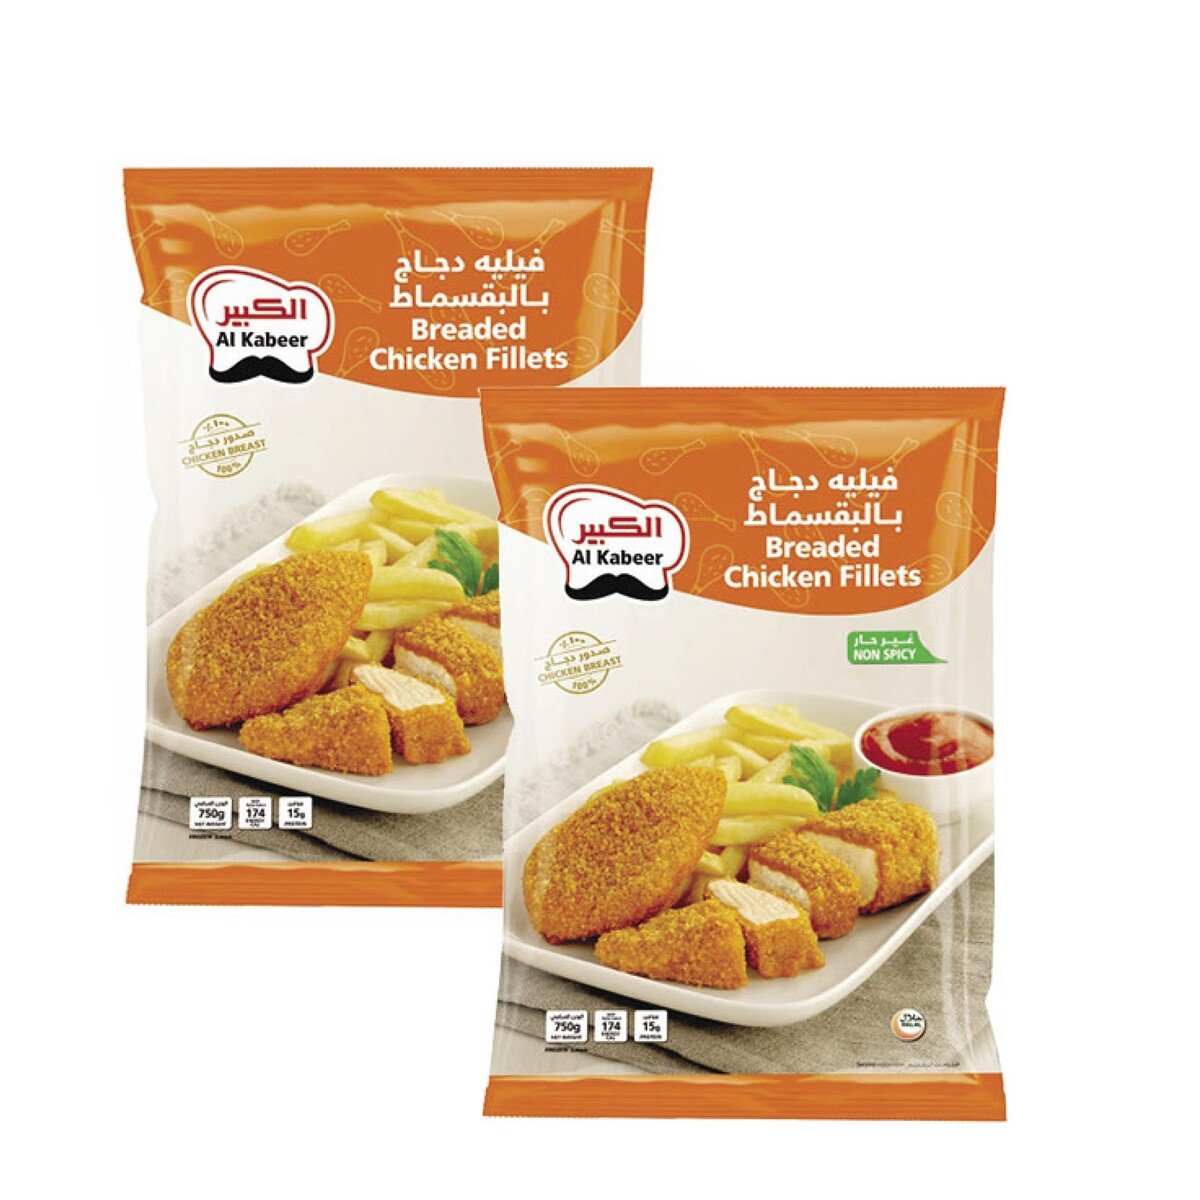 Buy Al Kabeer Breaded Chicken Fillets Value Pack 2 x 750 g Online at Best Price | Zingers | Lulu UAE in UAE